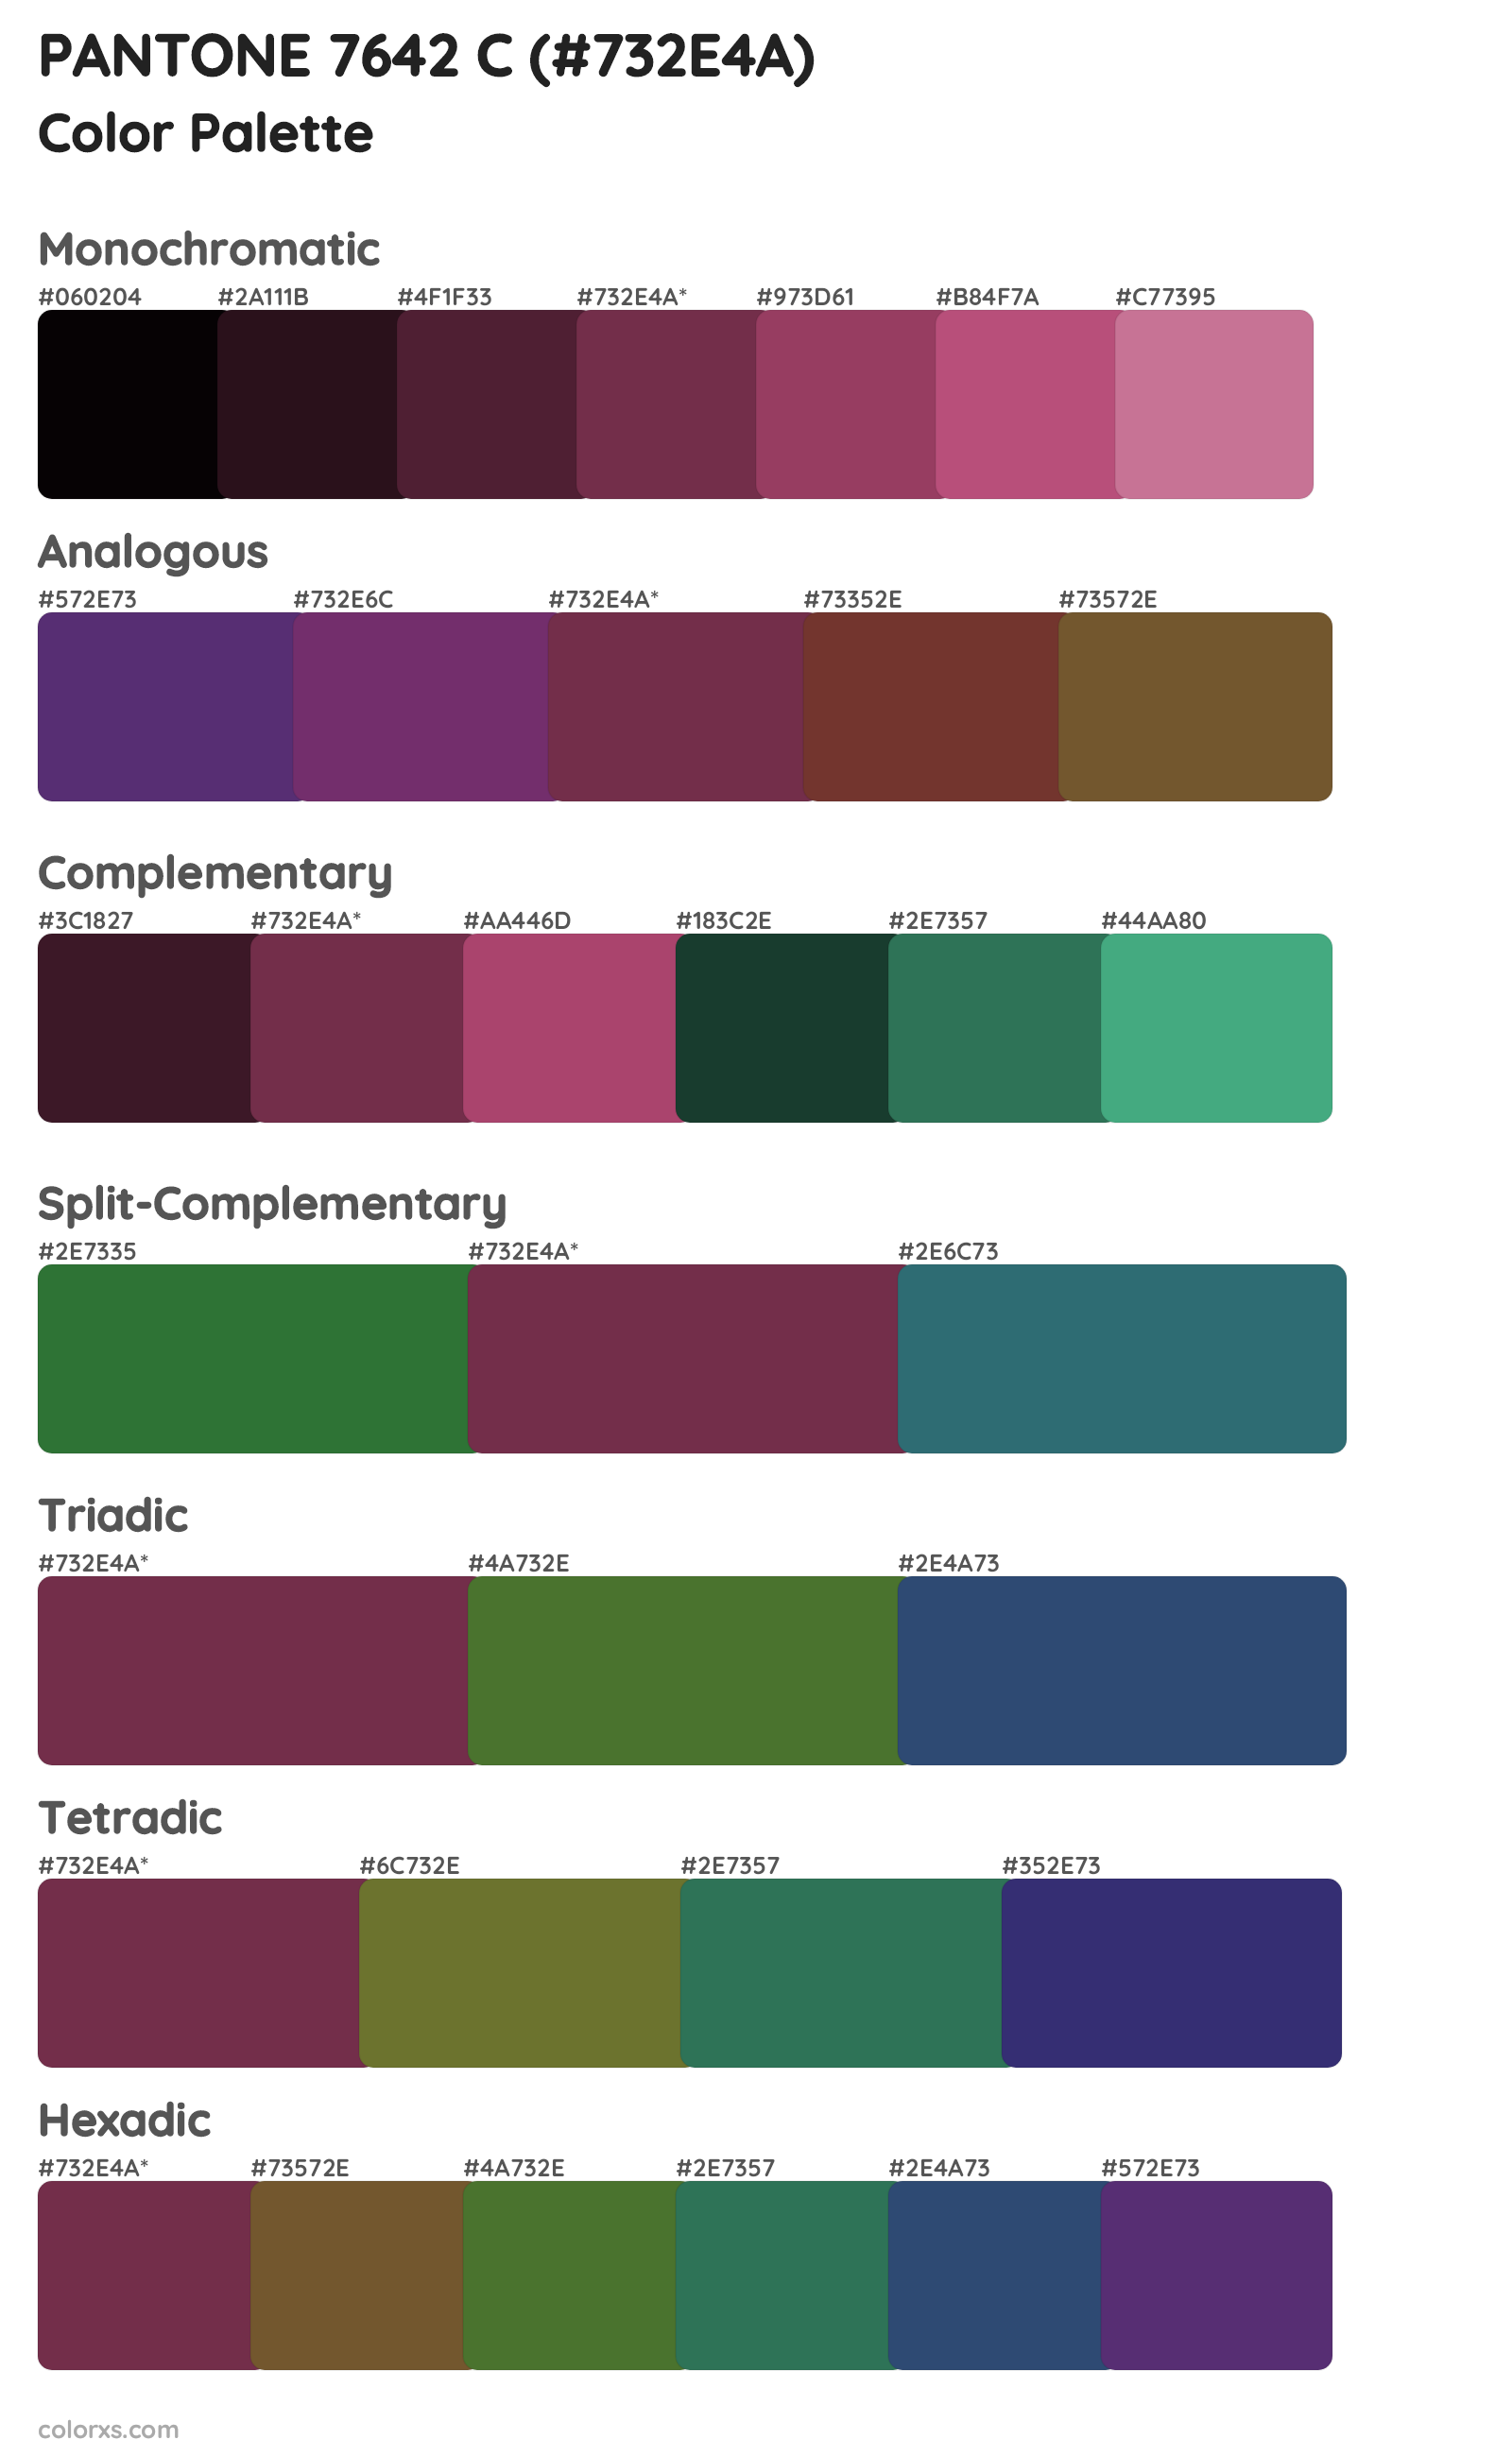 PANTONE 7642 C Color Scheme Palettes